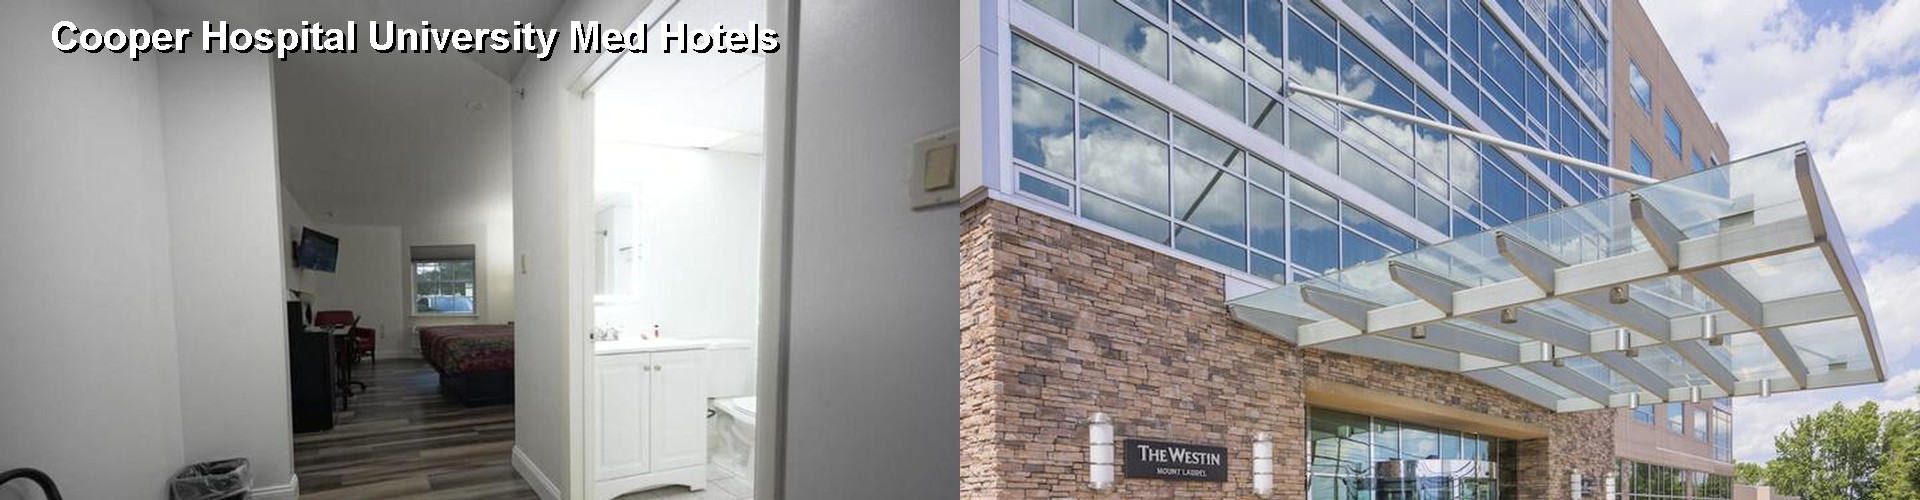 5 Best Hotels near Cooper Hospital University Med